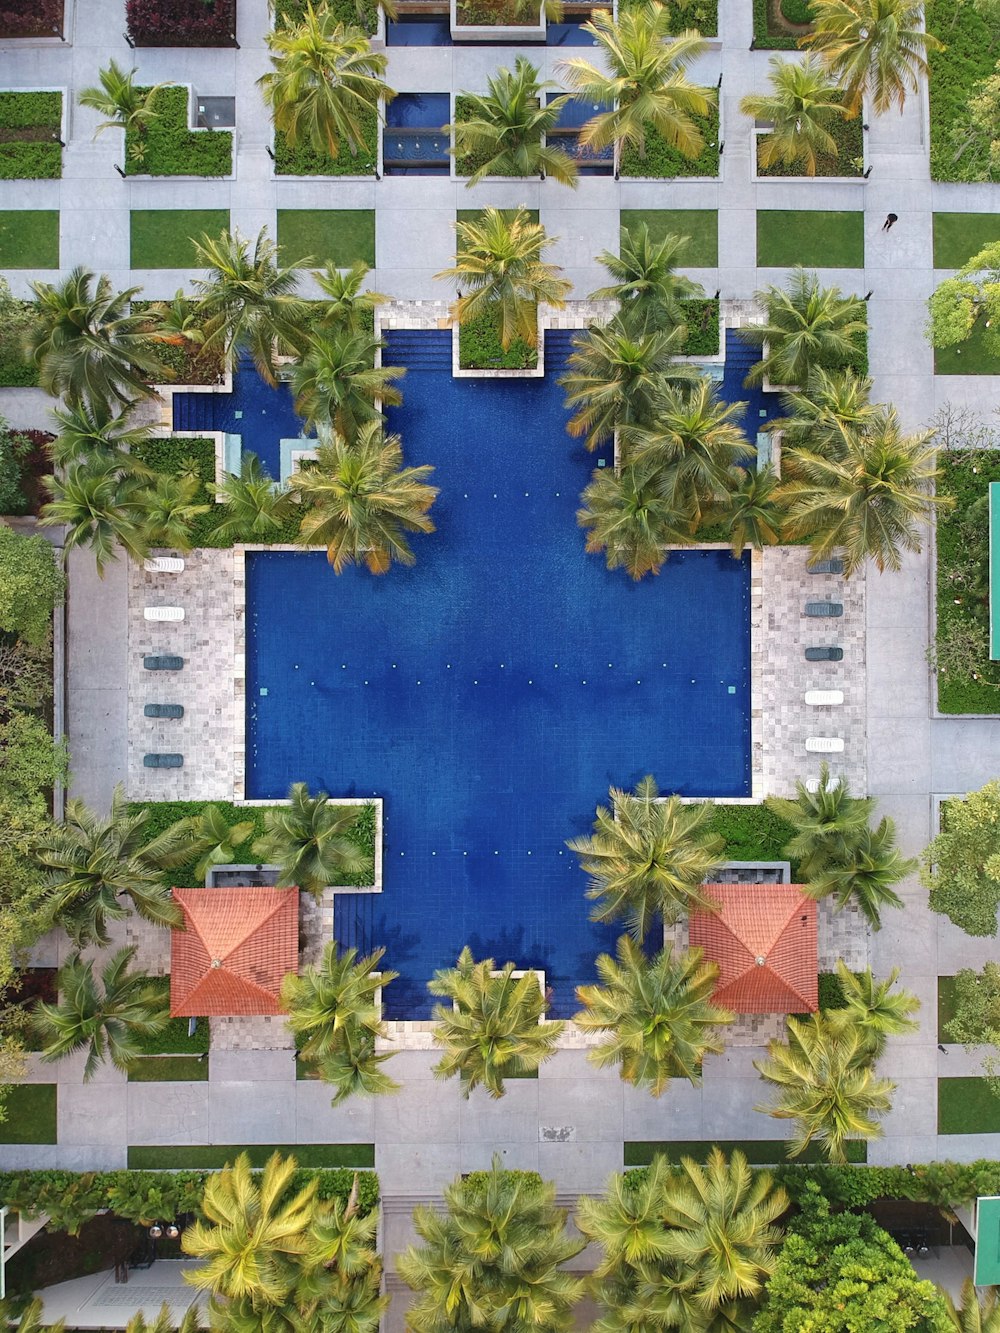 Vue aérienne de la piscine entourée de palmiers